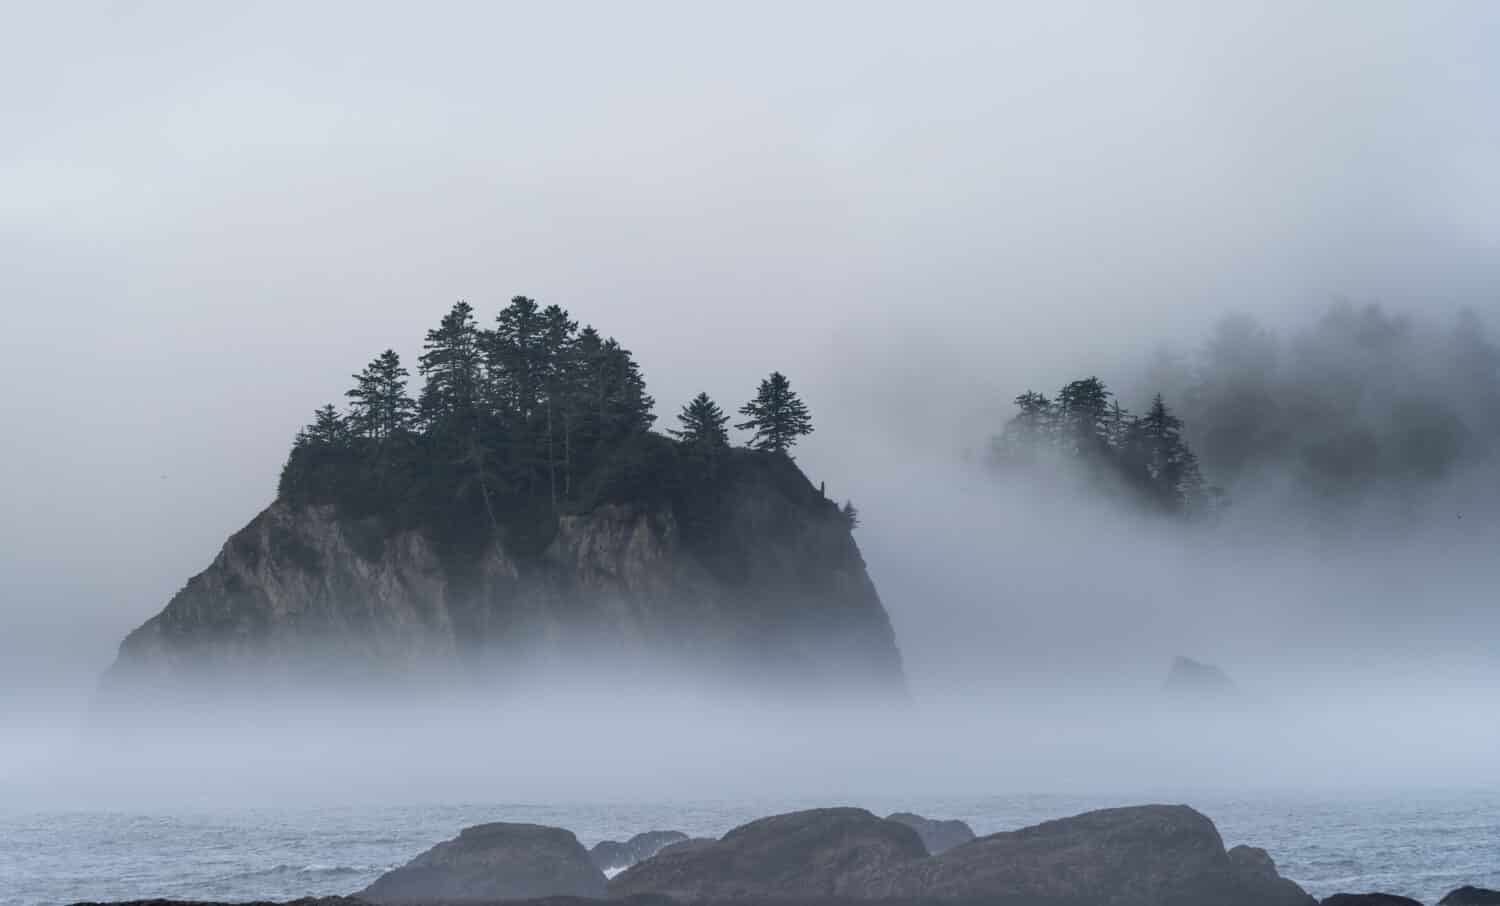 Morning fog envelopes a rocky island at Rialto Beach Washington. 